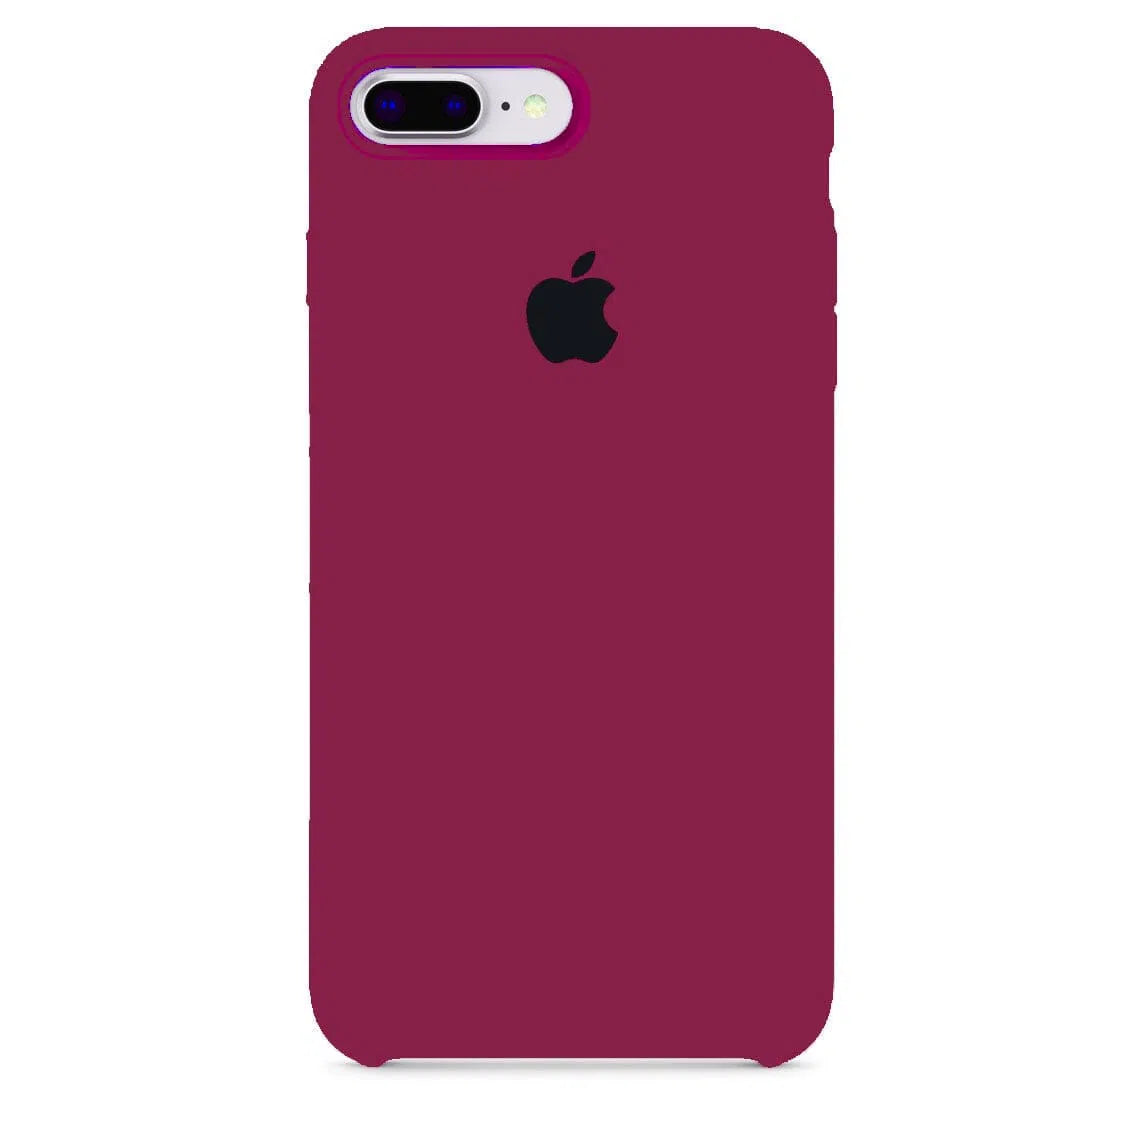 Husa iPhone Silicone Case Dark Rose (Burgundy) Anca's Store 7Plus/8Plus 